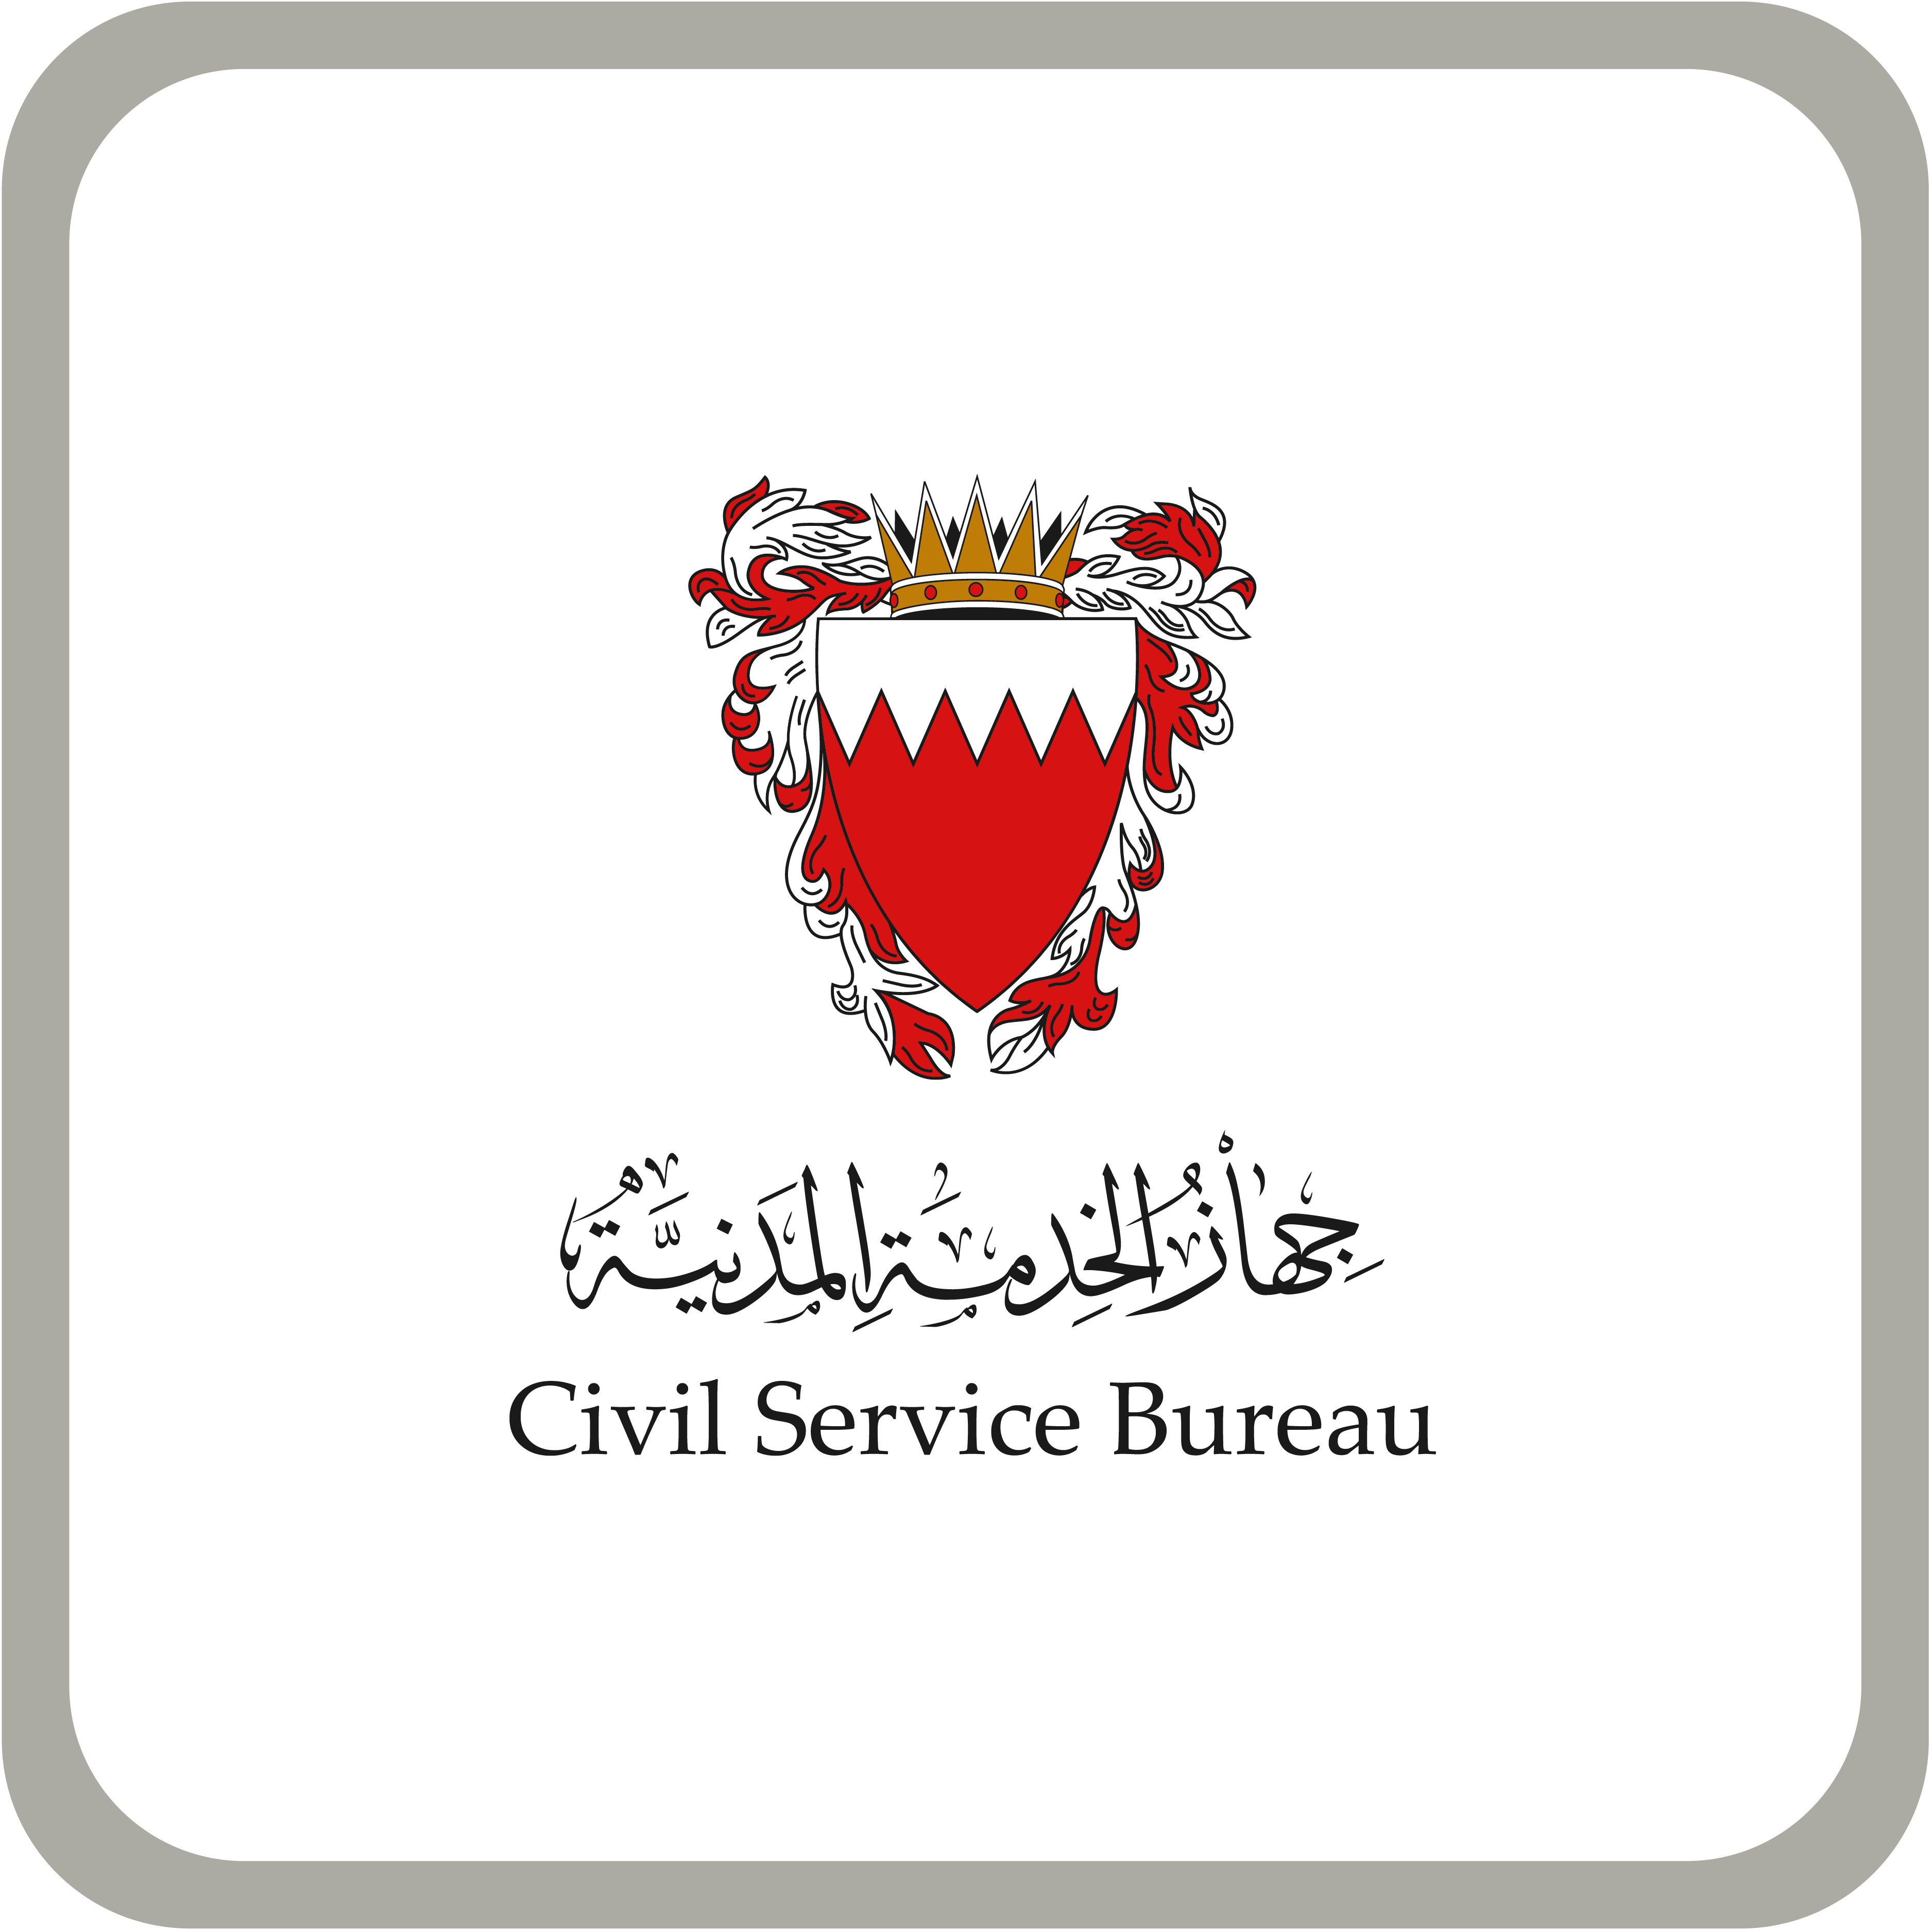 Civil Service Bureau